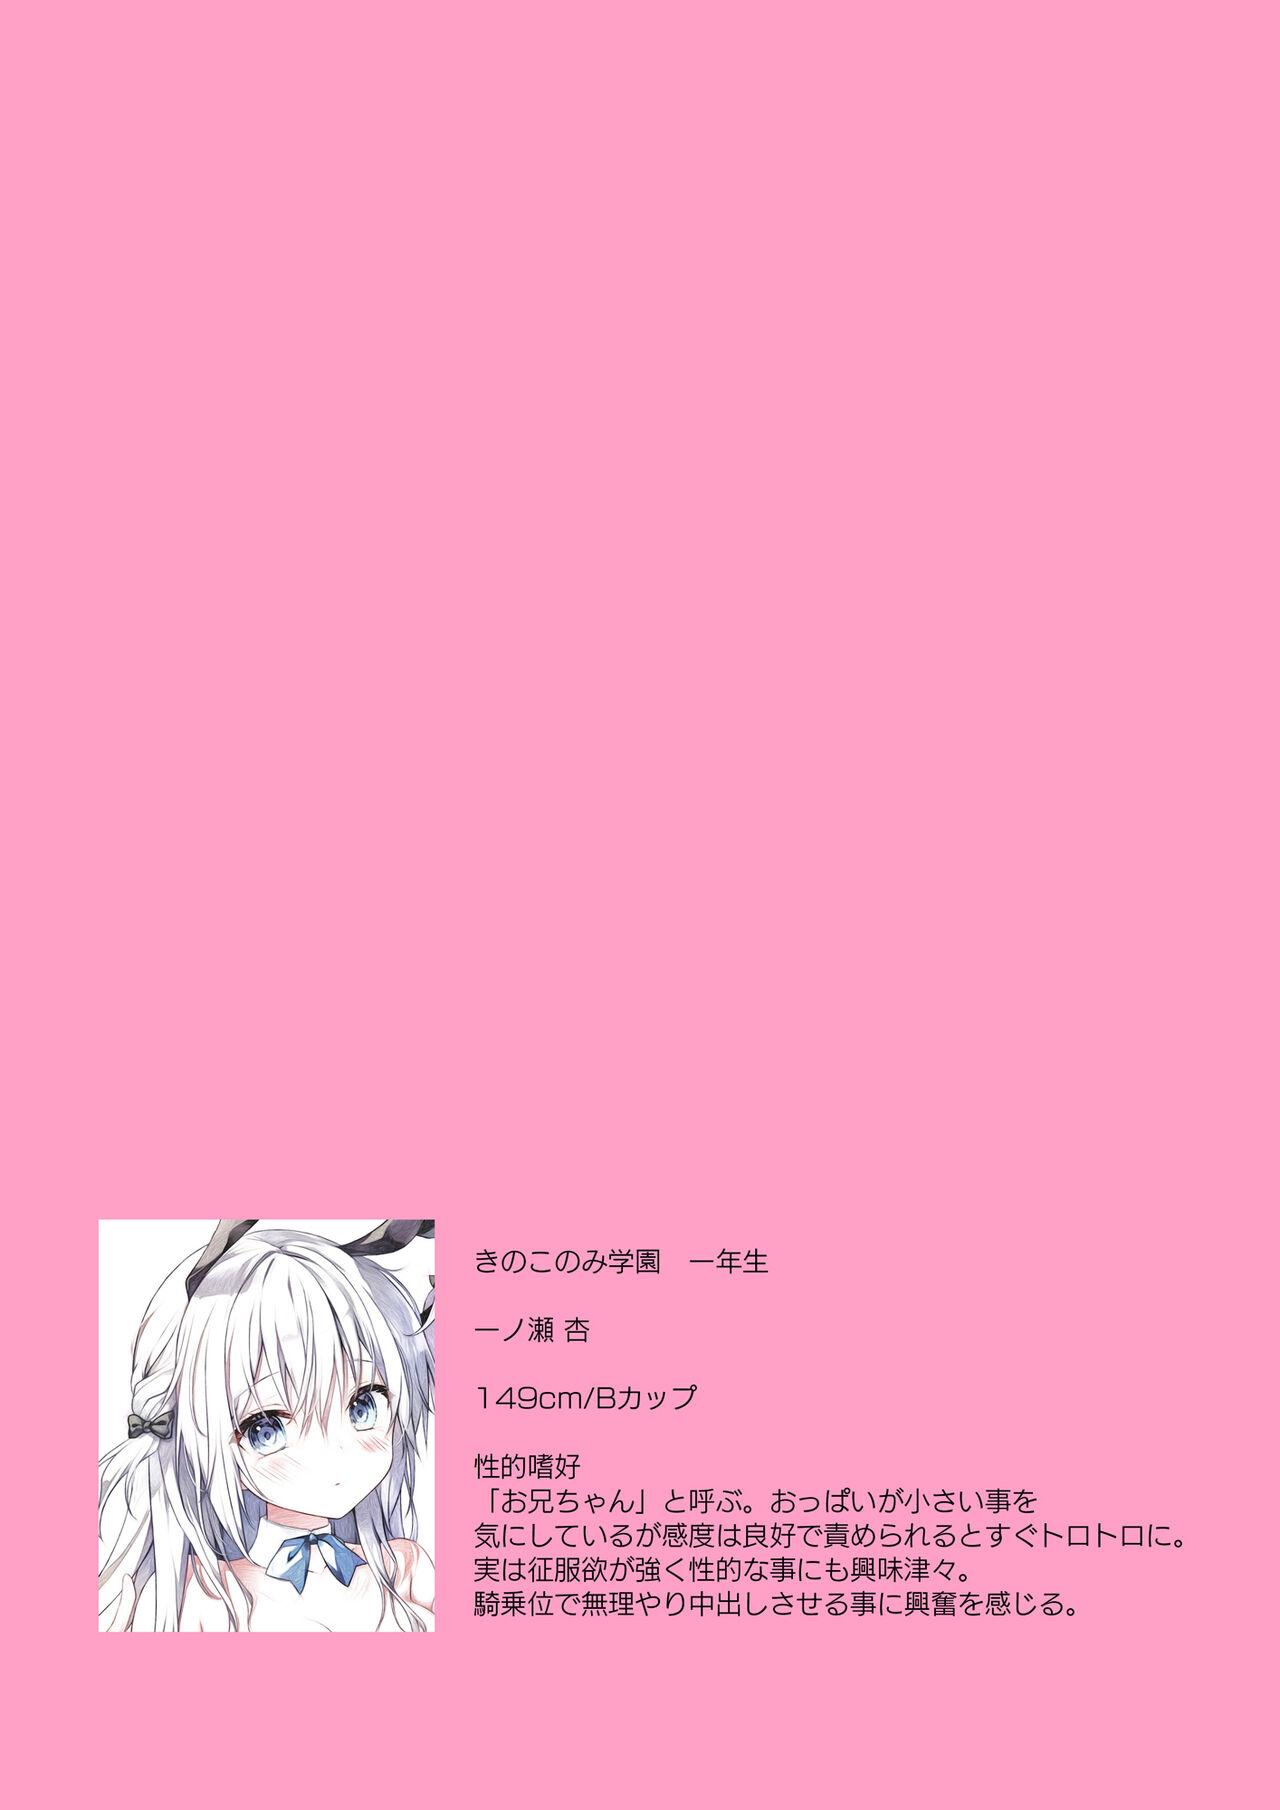 Houkago Bunnygirl - an ichinose & matsuri suzumiya 9